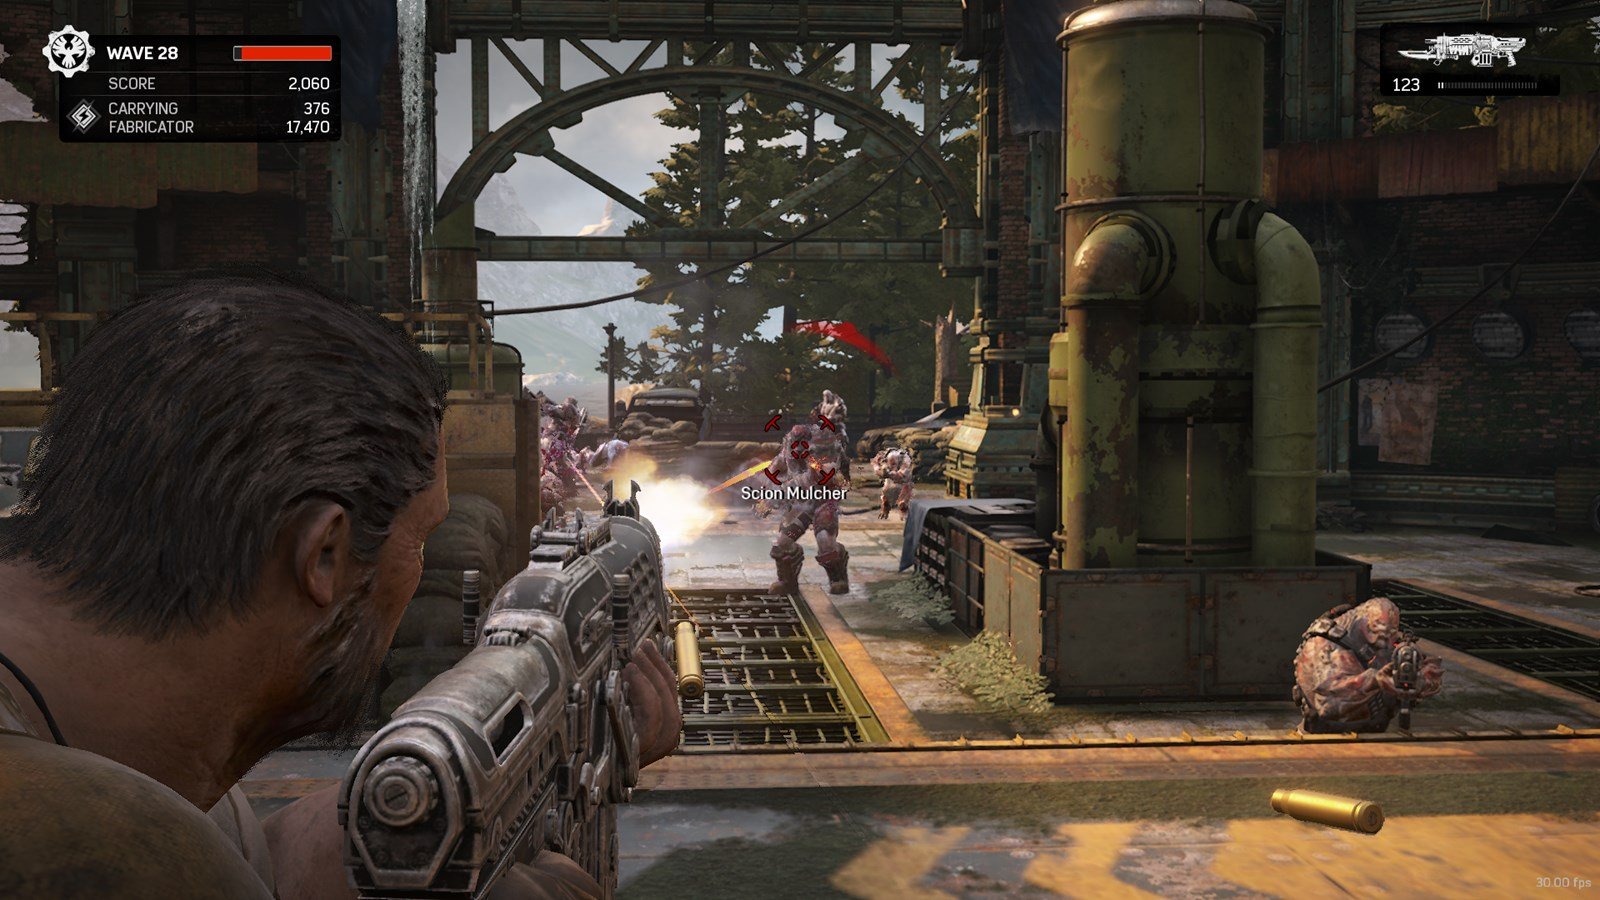 Gears of War 4 to Include Splitscreen Co-op on PC, LAN and Cross